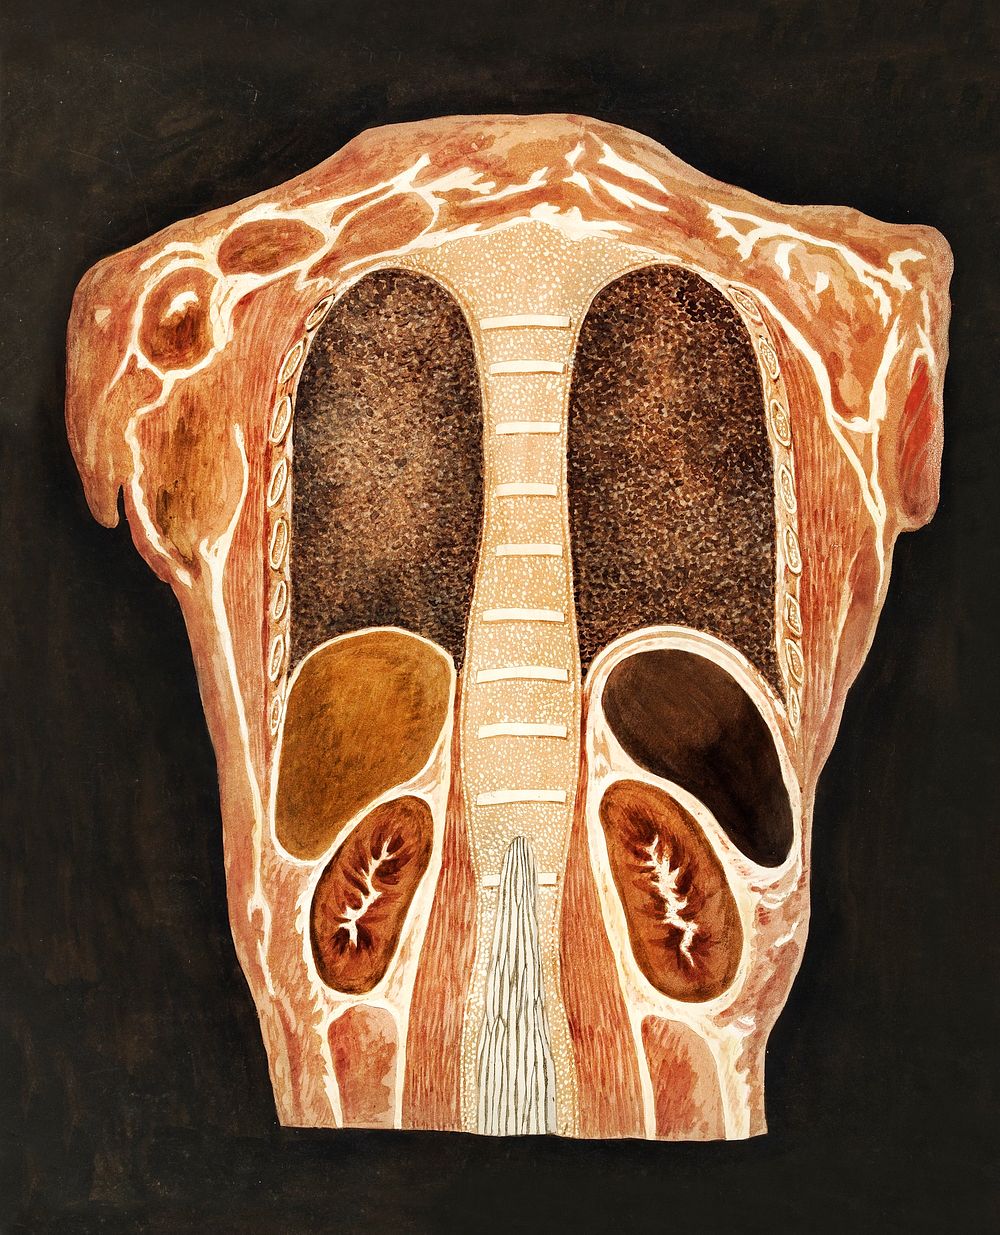 Anatomische studie van de organen in de borstkas, gezien vanuit de rug (1778&ndash;1838) print in high resolution by…